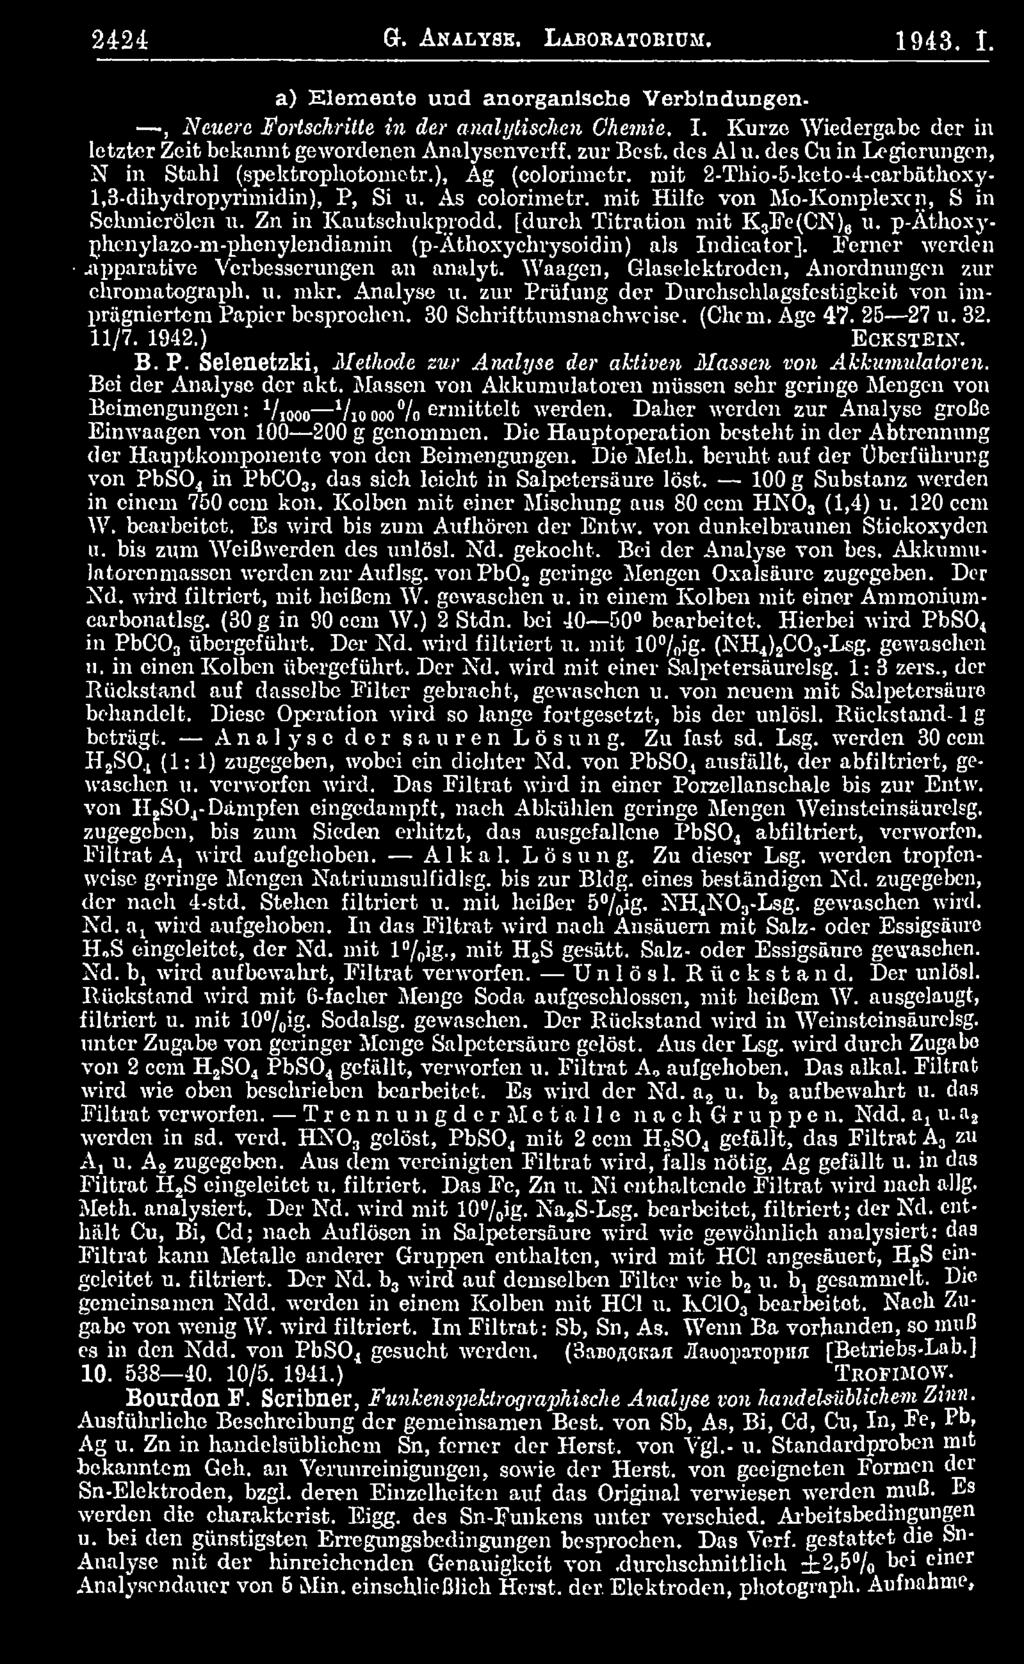 30 Schrifttumsnachwcise. (Chcm. Age 47. 25 27 u. 32. 11/7. 1942.) Eckstein. B. P. Selenetzki, Methode zur Atmlyse der aktiven Massen von Akkumulatoren Bei der Analyse der akt.